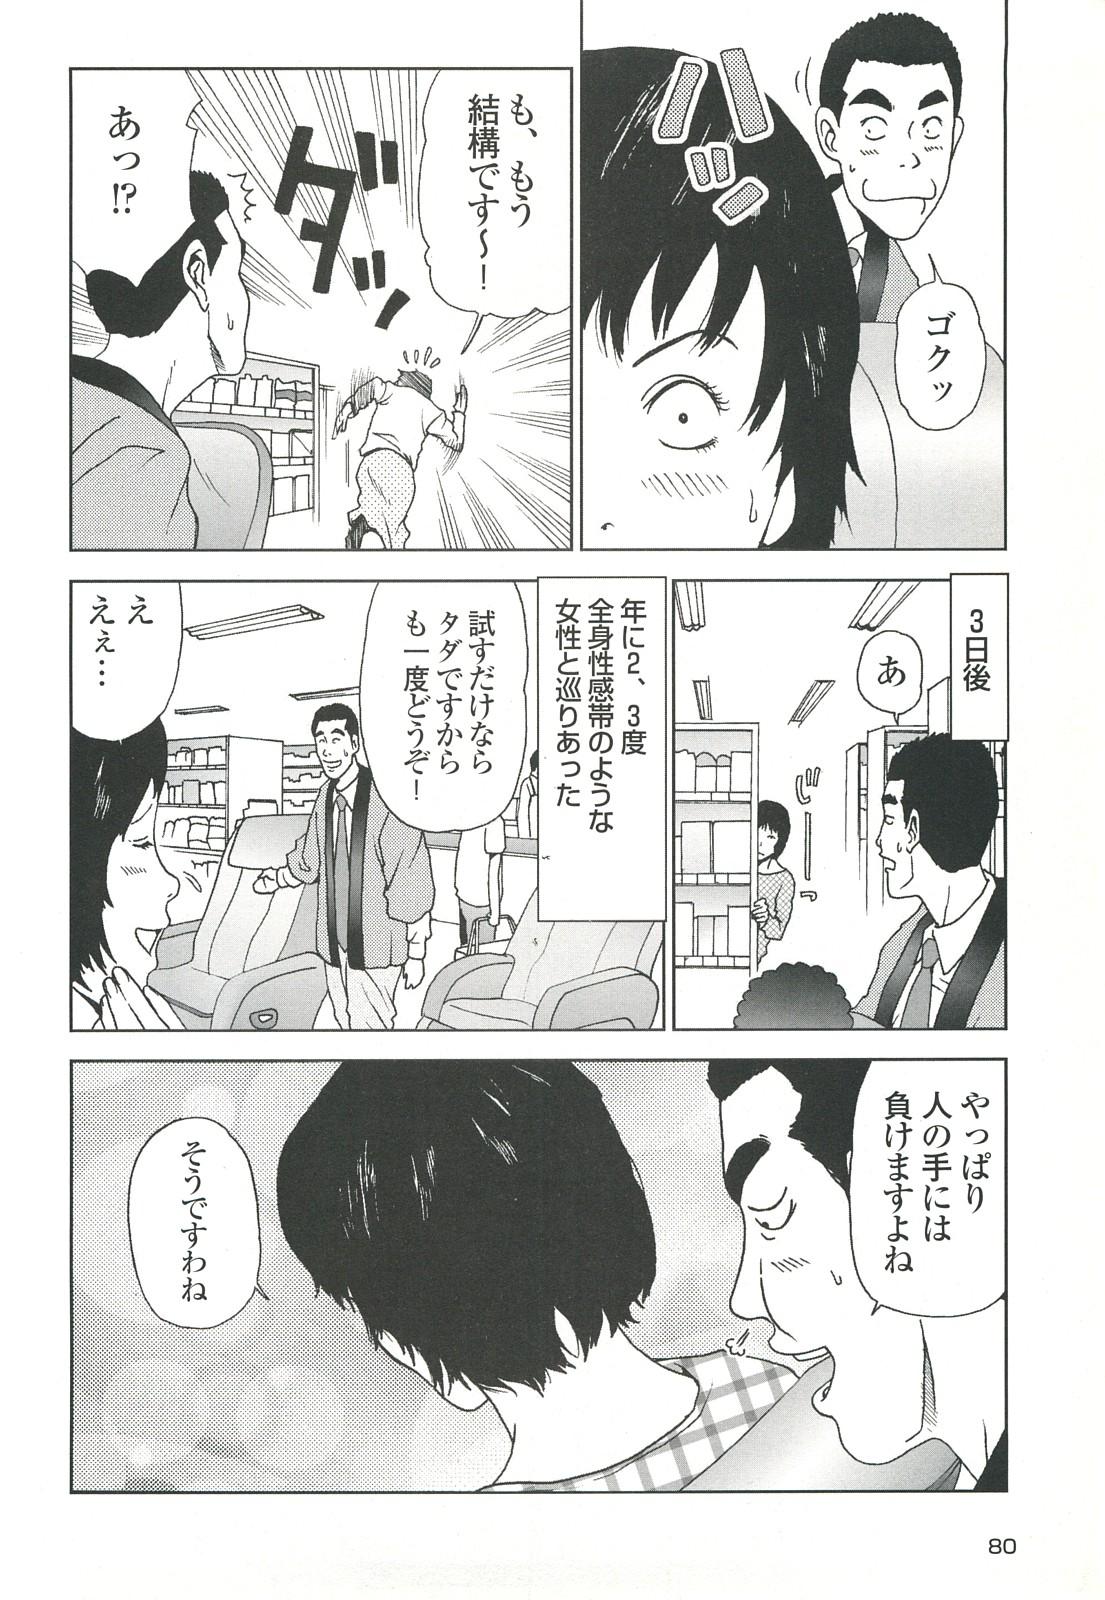 コミック裏モノJAPAN Vol.18 今井のりたつスペシャル号 79